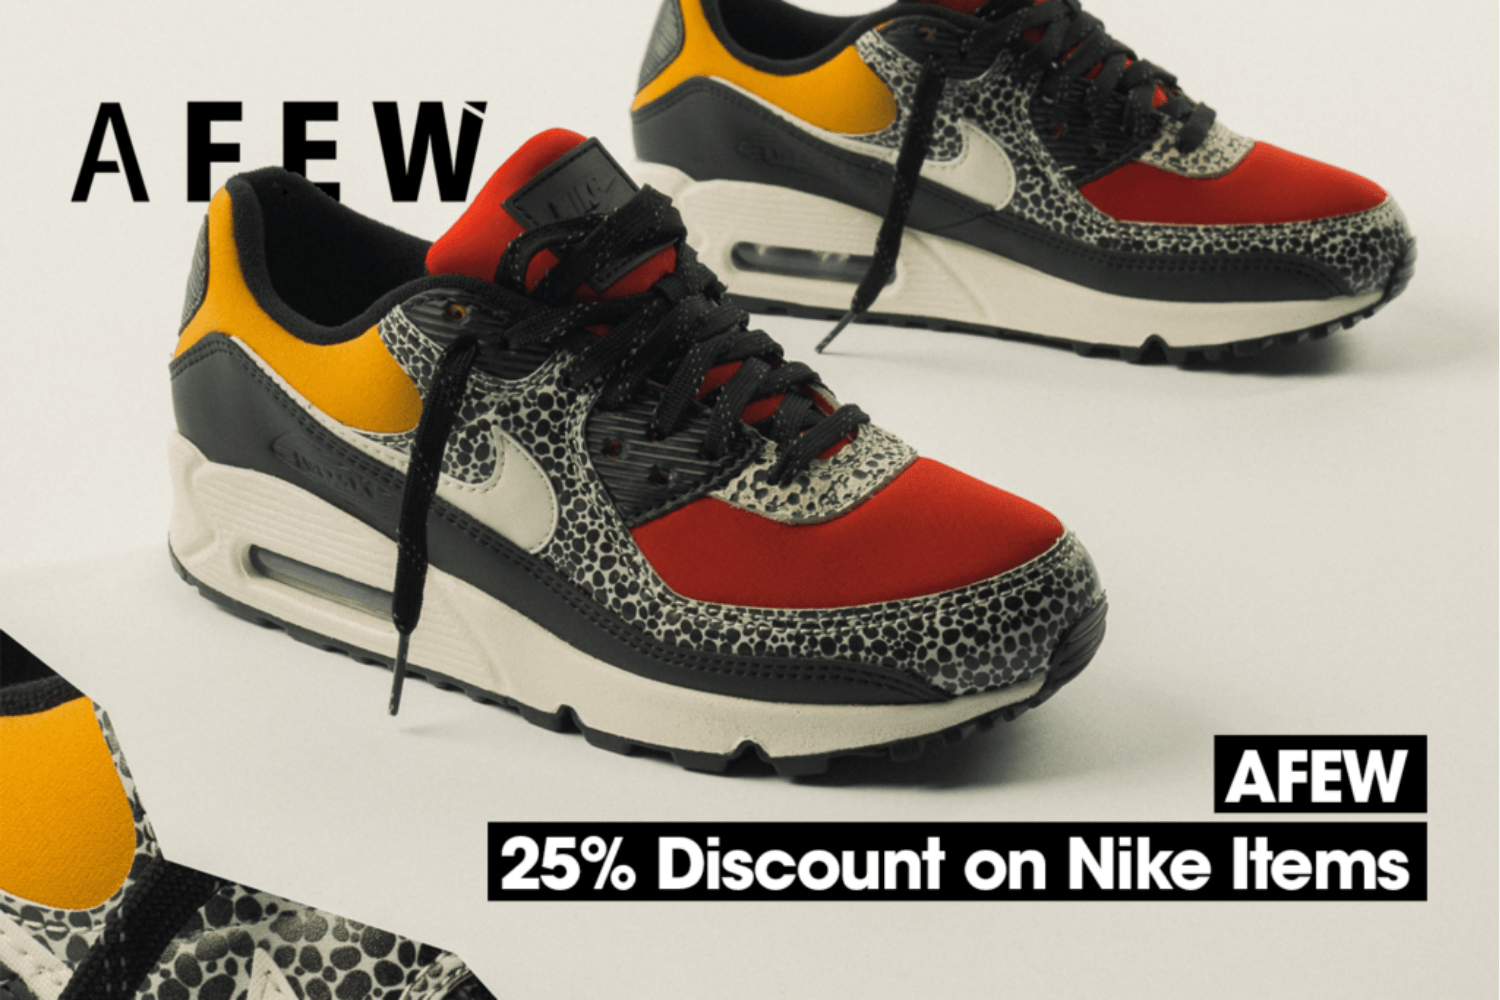 25% auf Nike Produkte bei Afew mit dem Sneakerjagers Rabattcode